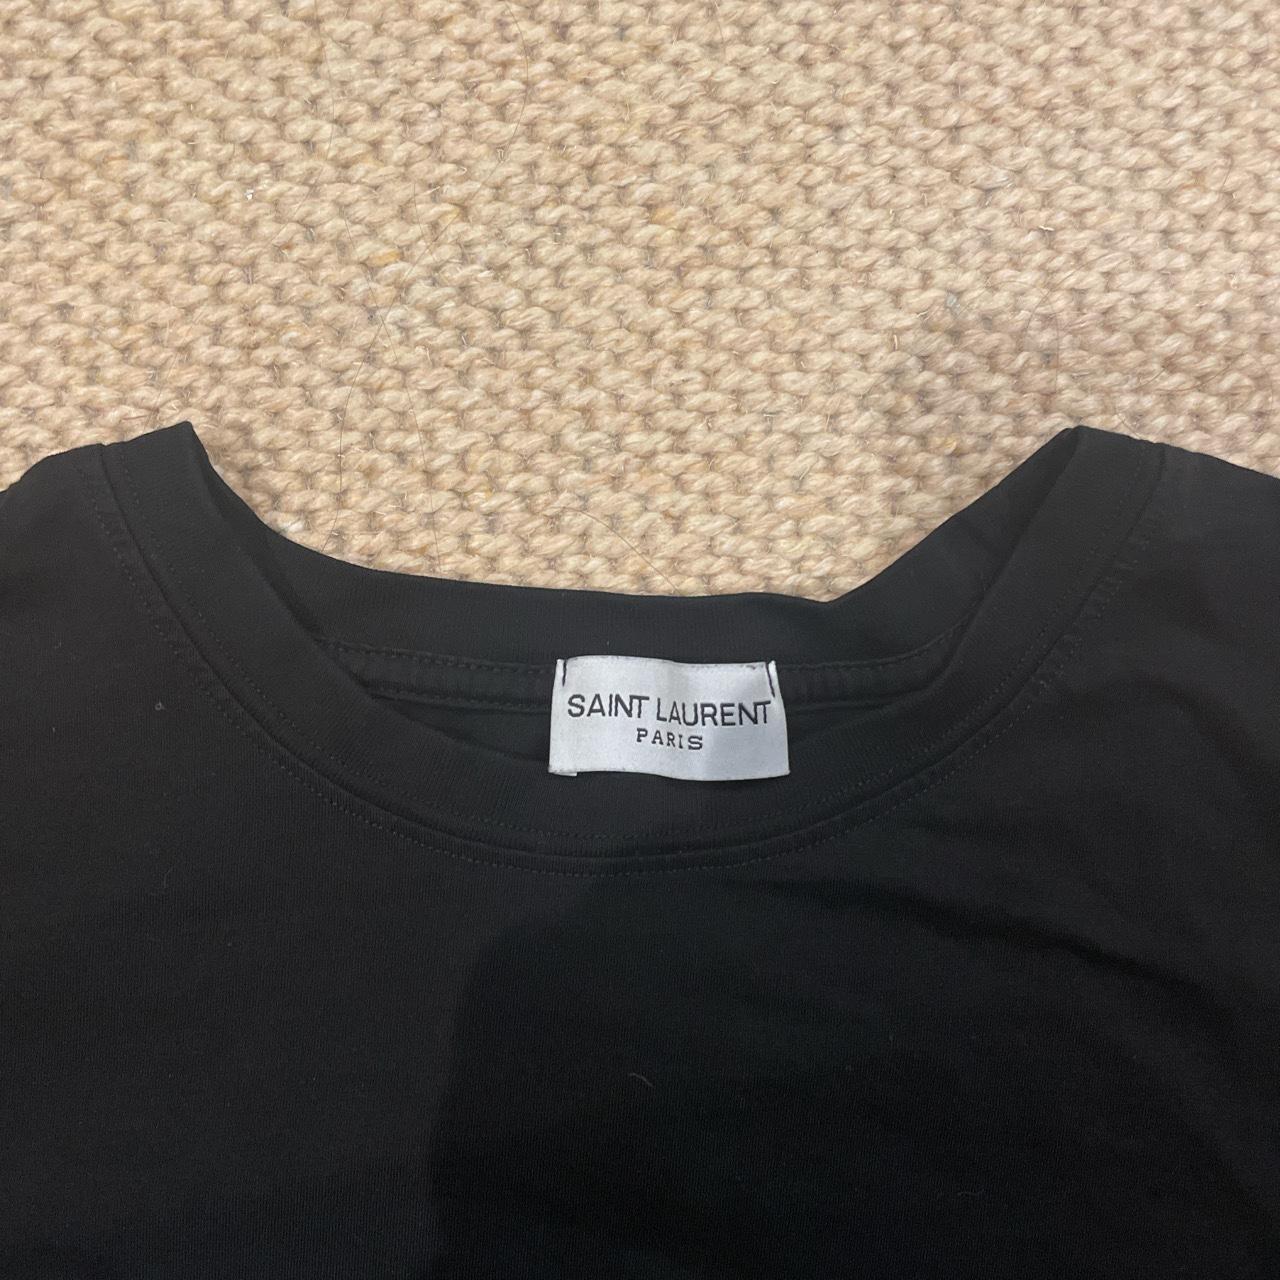 Saint Laurent authentic black tshirt XL RRP... - Depop